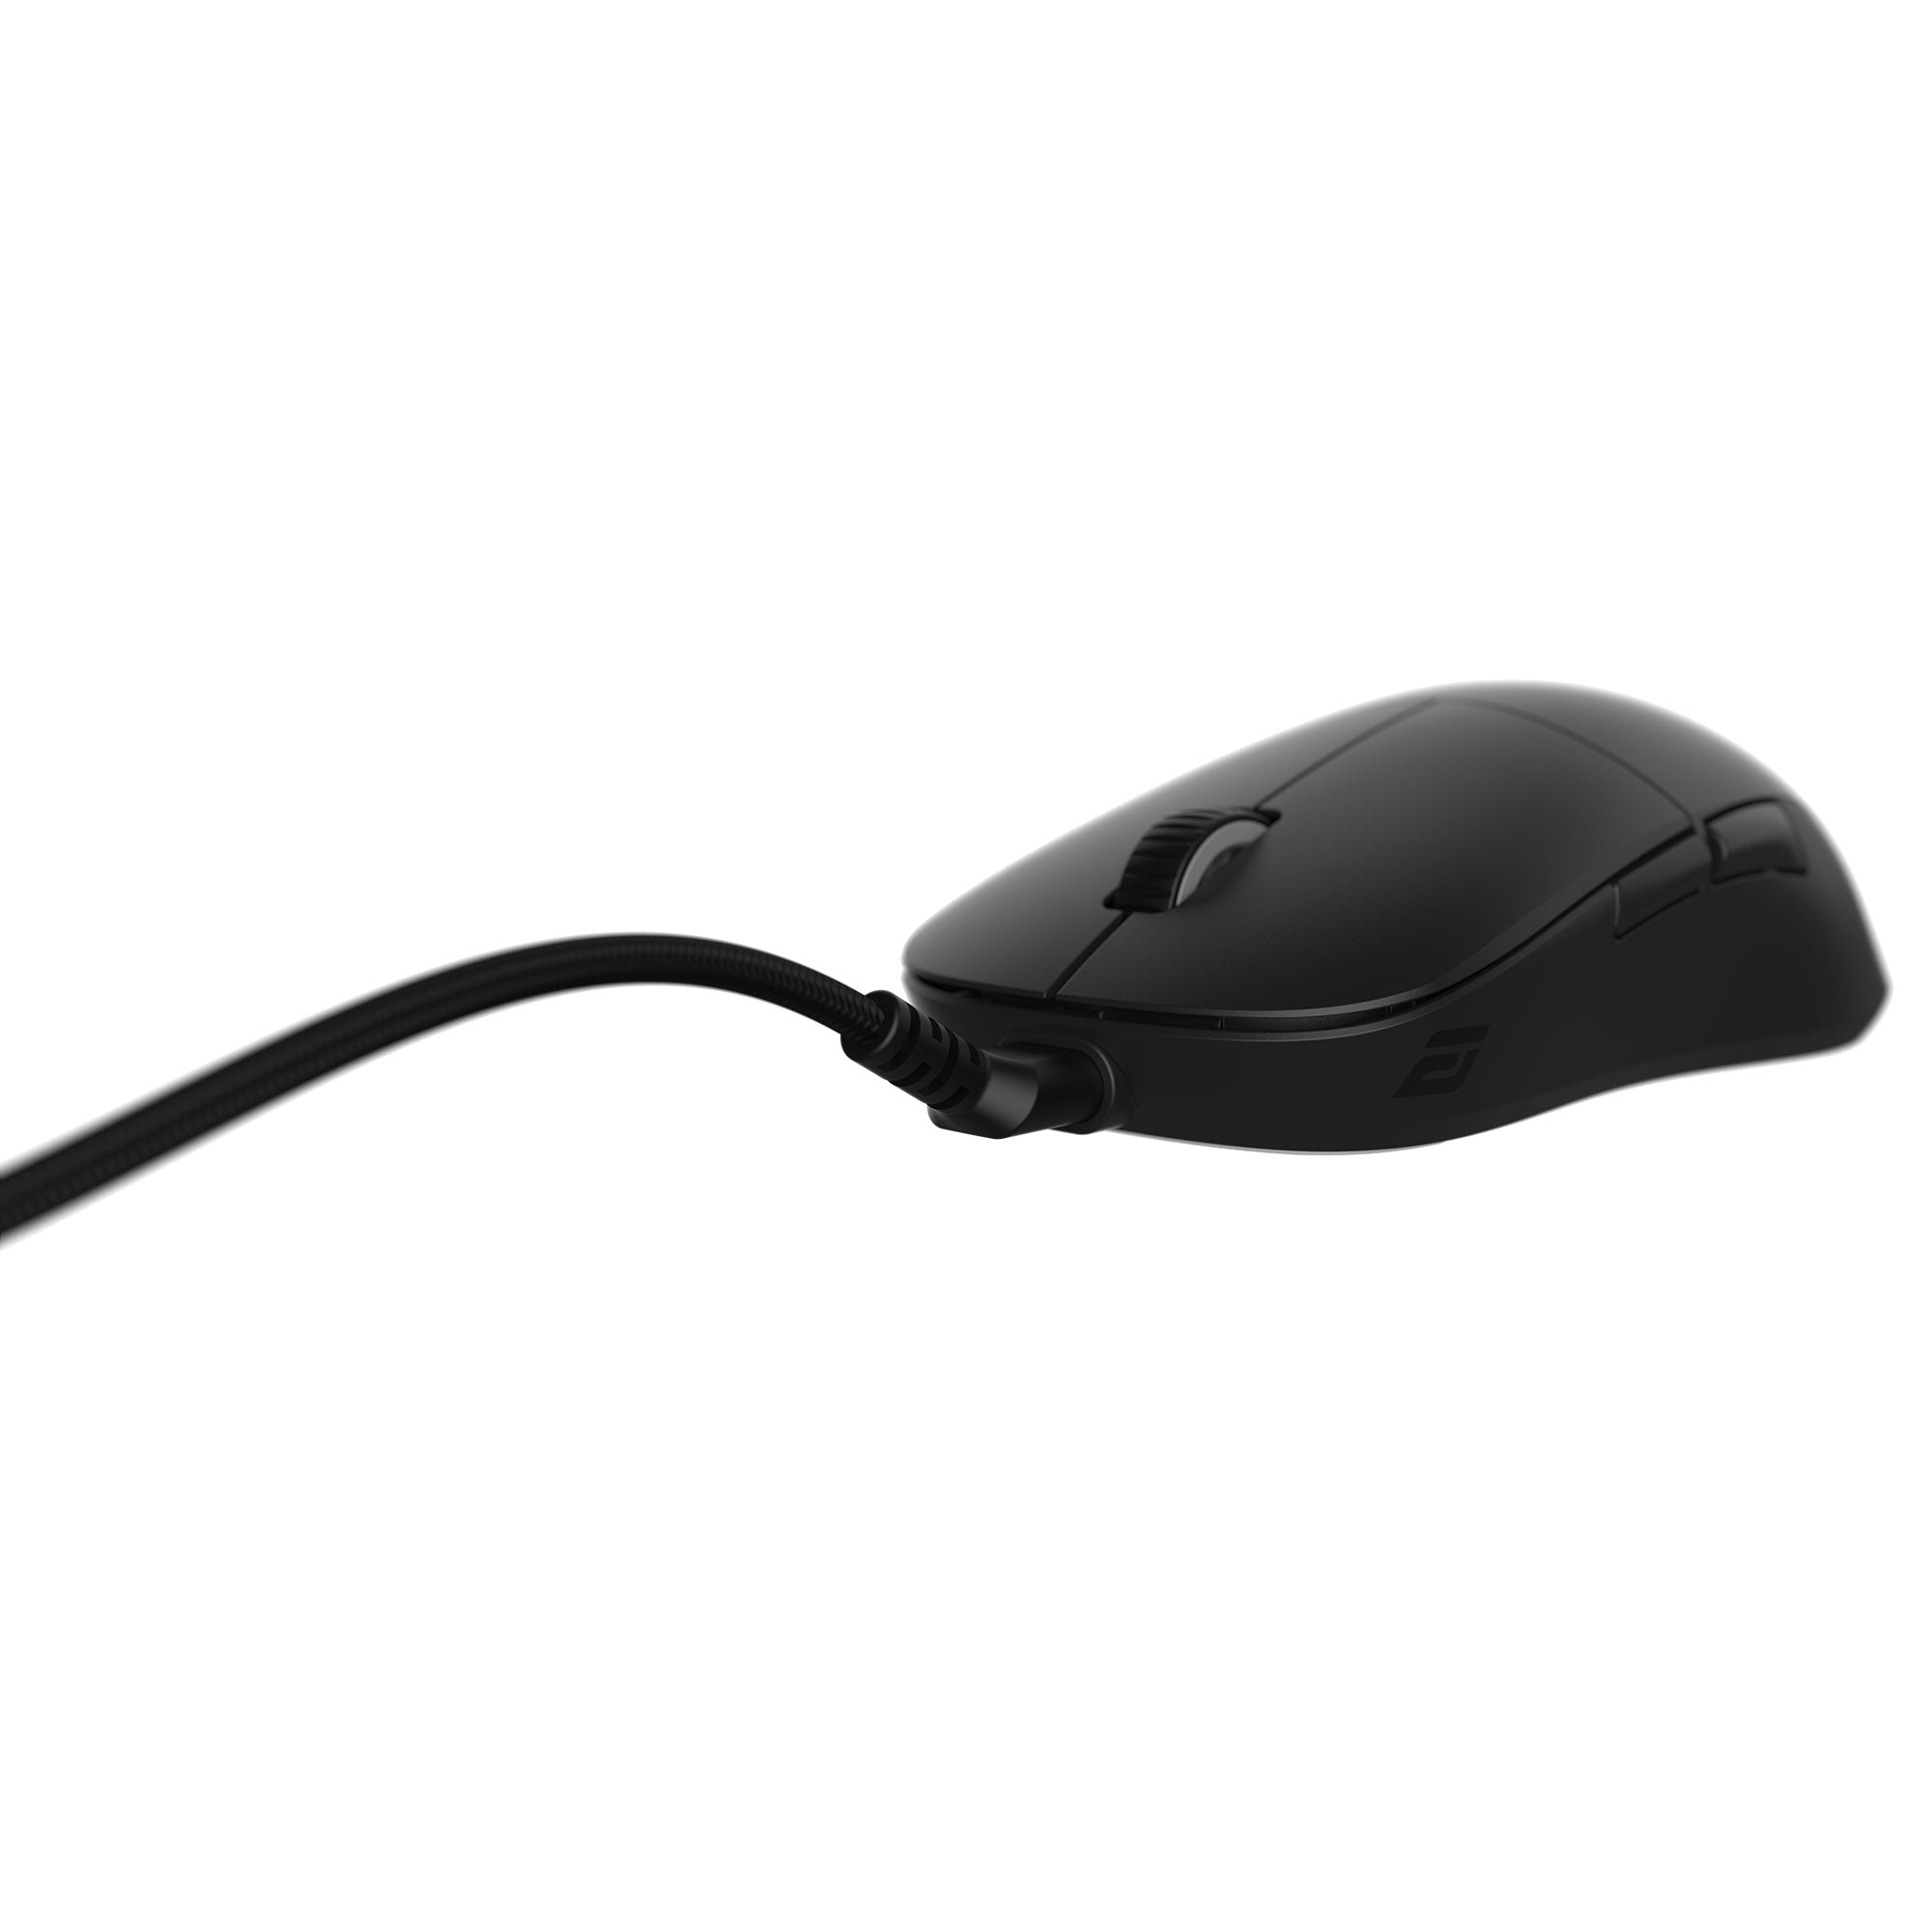 Endgame Gear XM2we * Wireless Mouse MK6T81OU7W |59837|